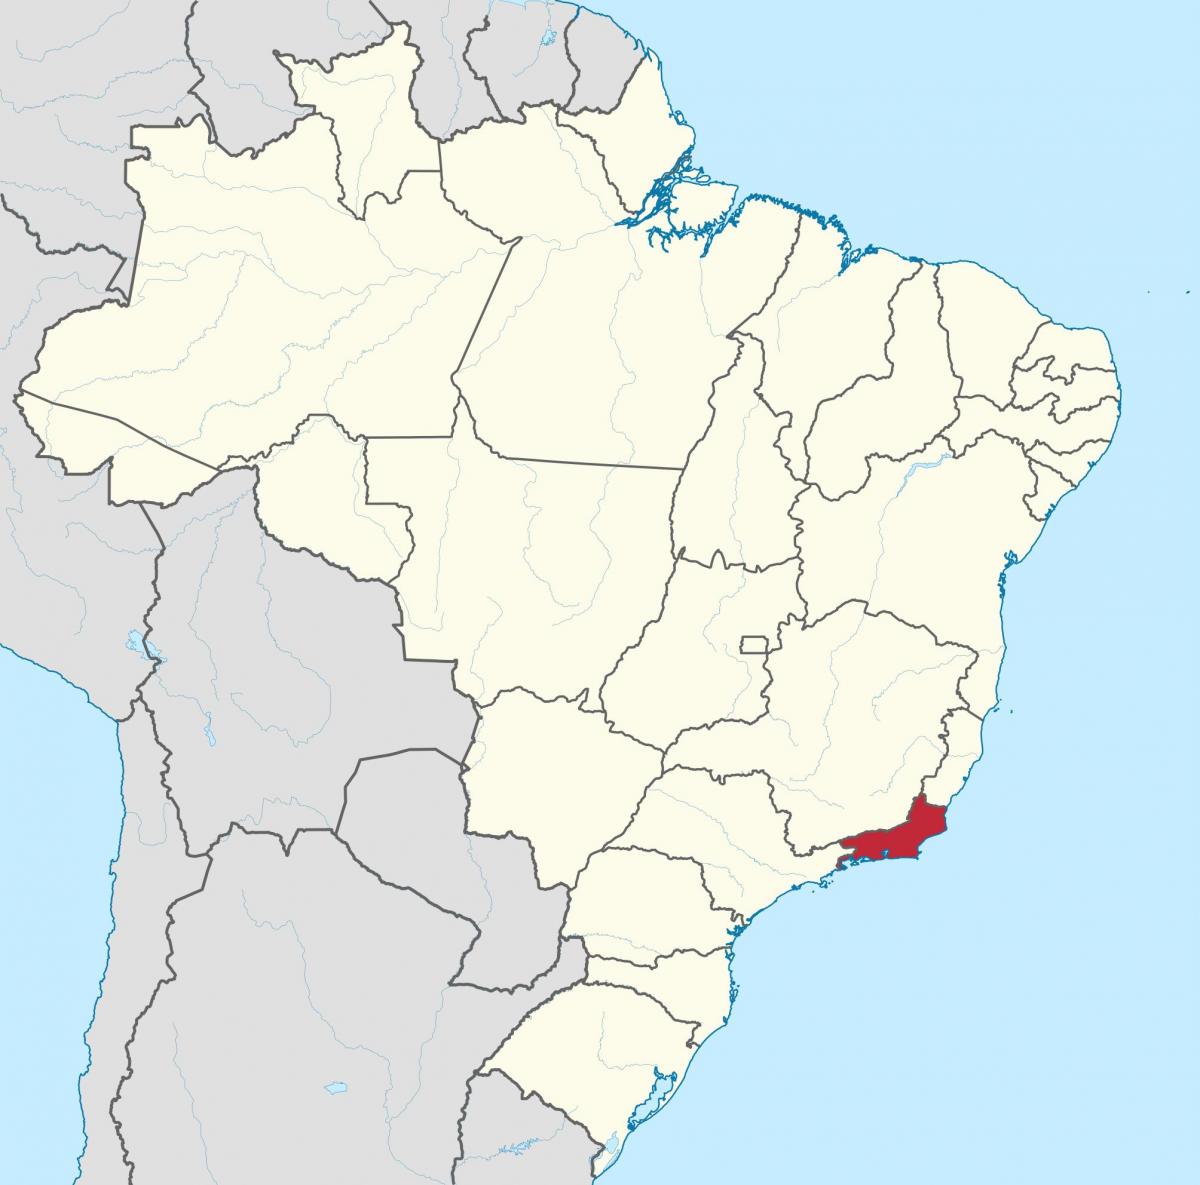 Карта Рио-де-Жанейро